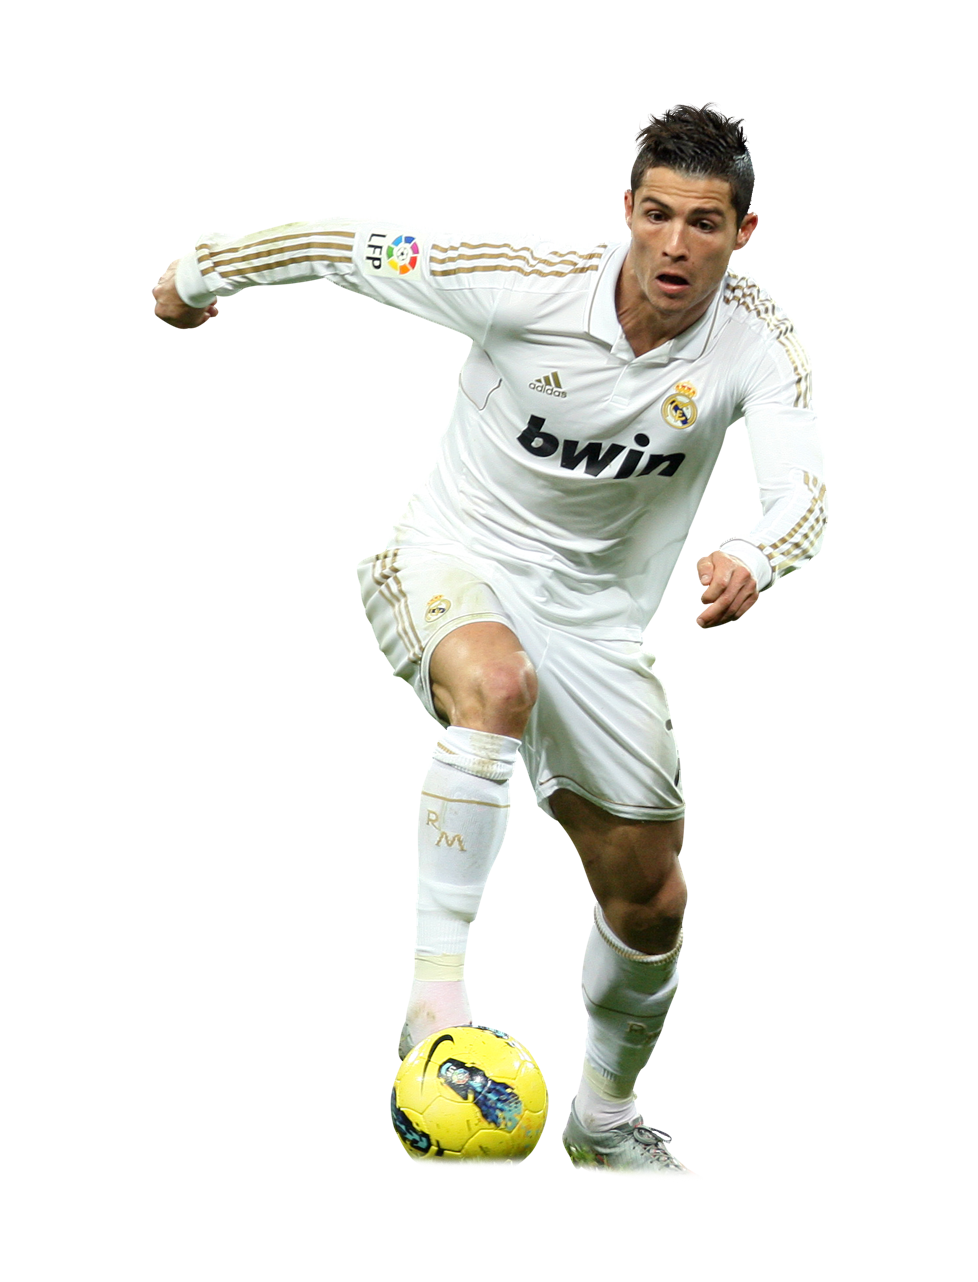 O trailer de história do jogo “FIFA 18” traz grandes nomes, como Cristiano Ronaldo